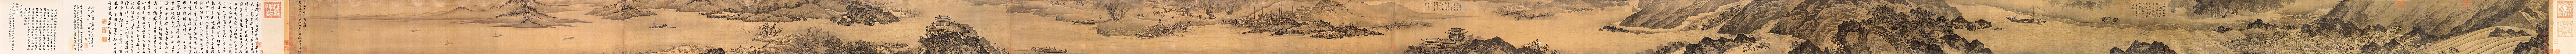 Tienduizend mijlen van de rivier de Yangtze, anonieme schilder uit de Ming-periode (1368–1644)